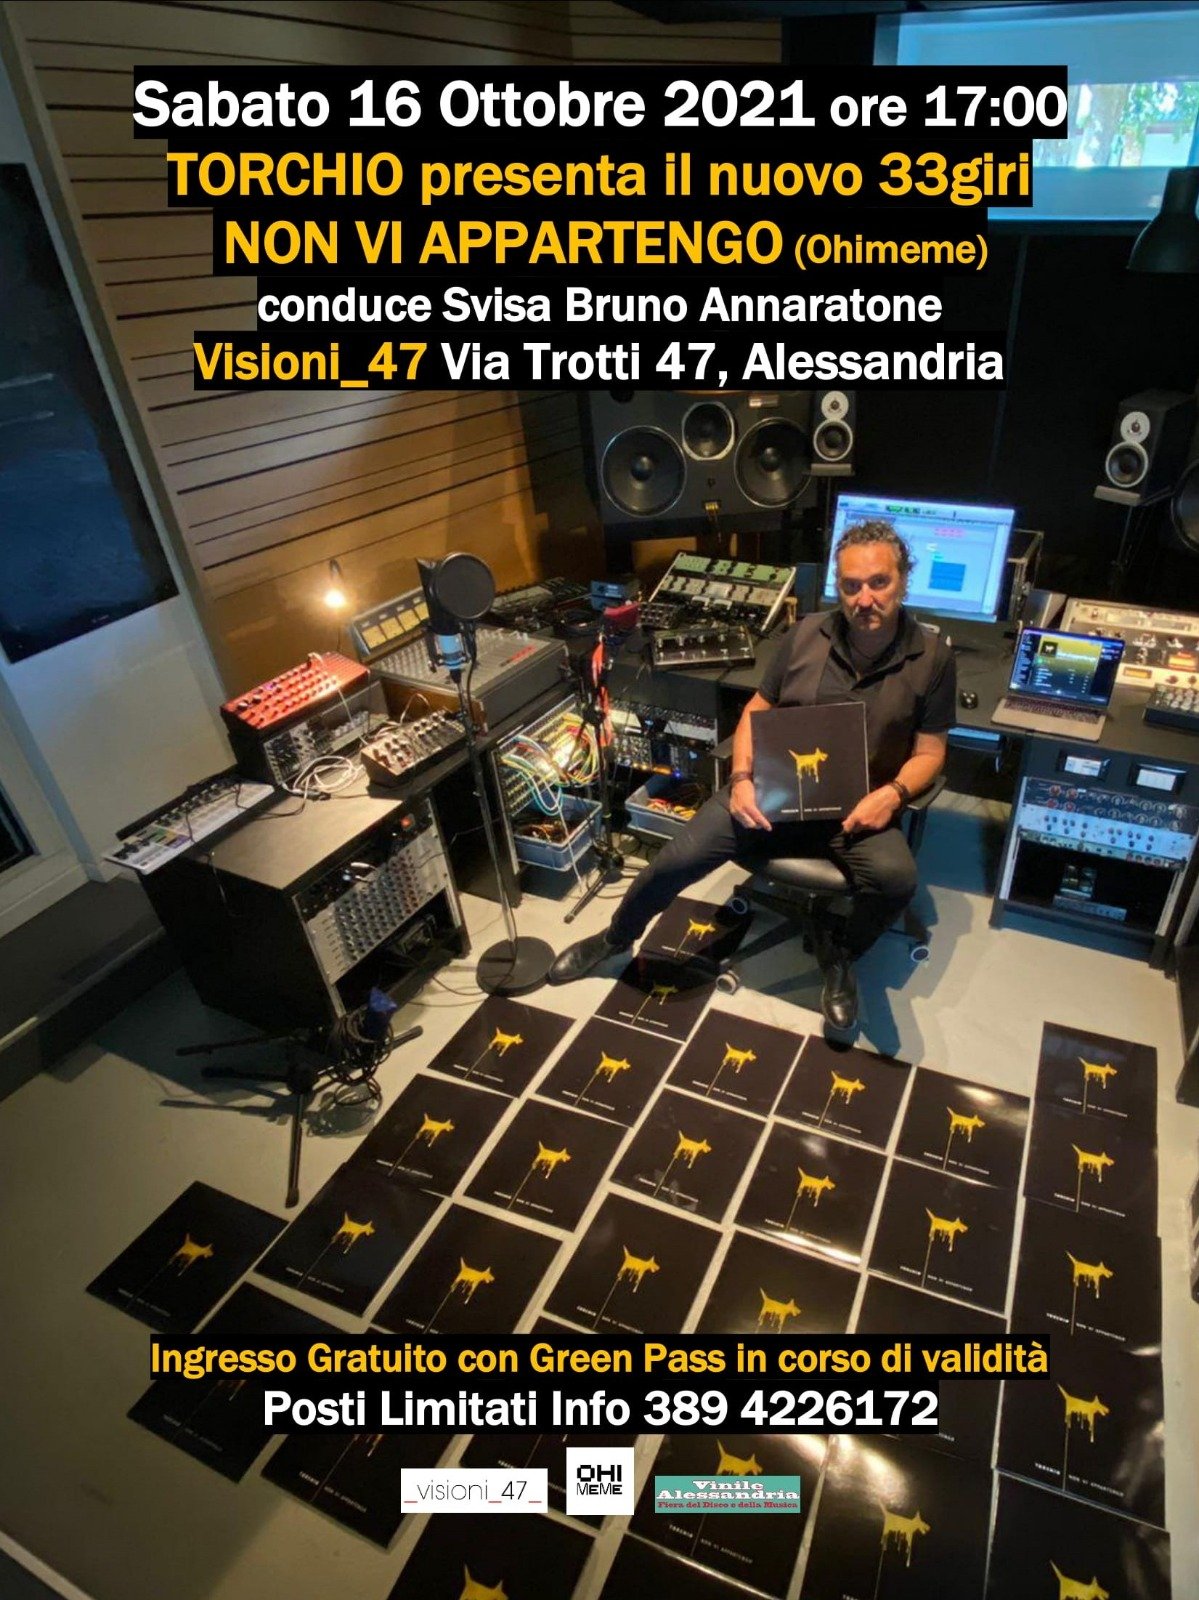 Massimo Torchio presenta il nuovo disco “Non vi appartengo”